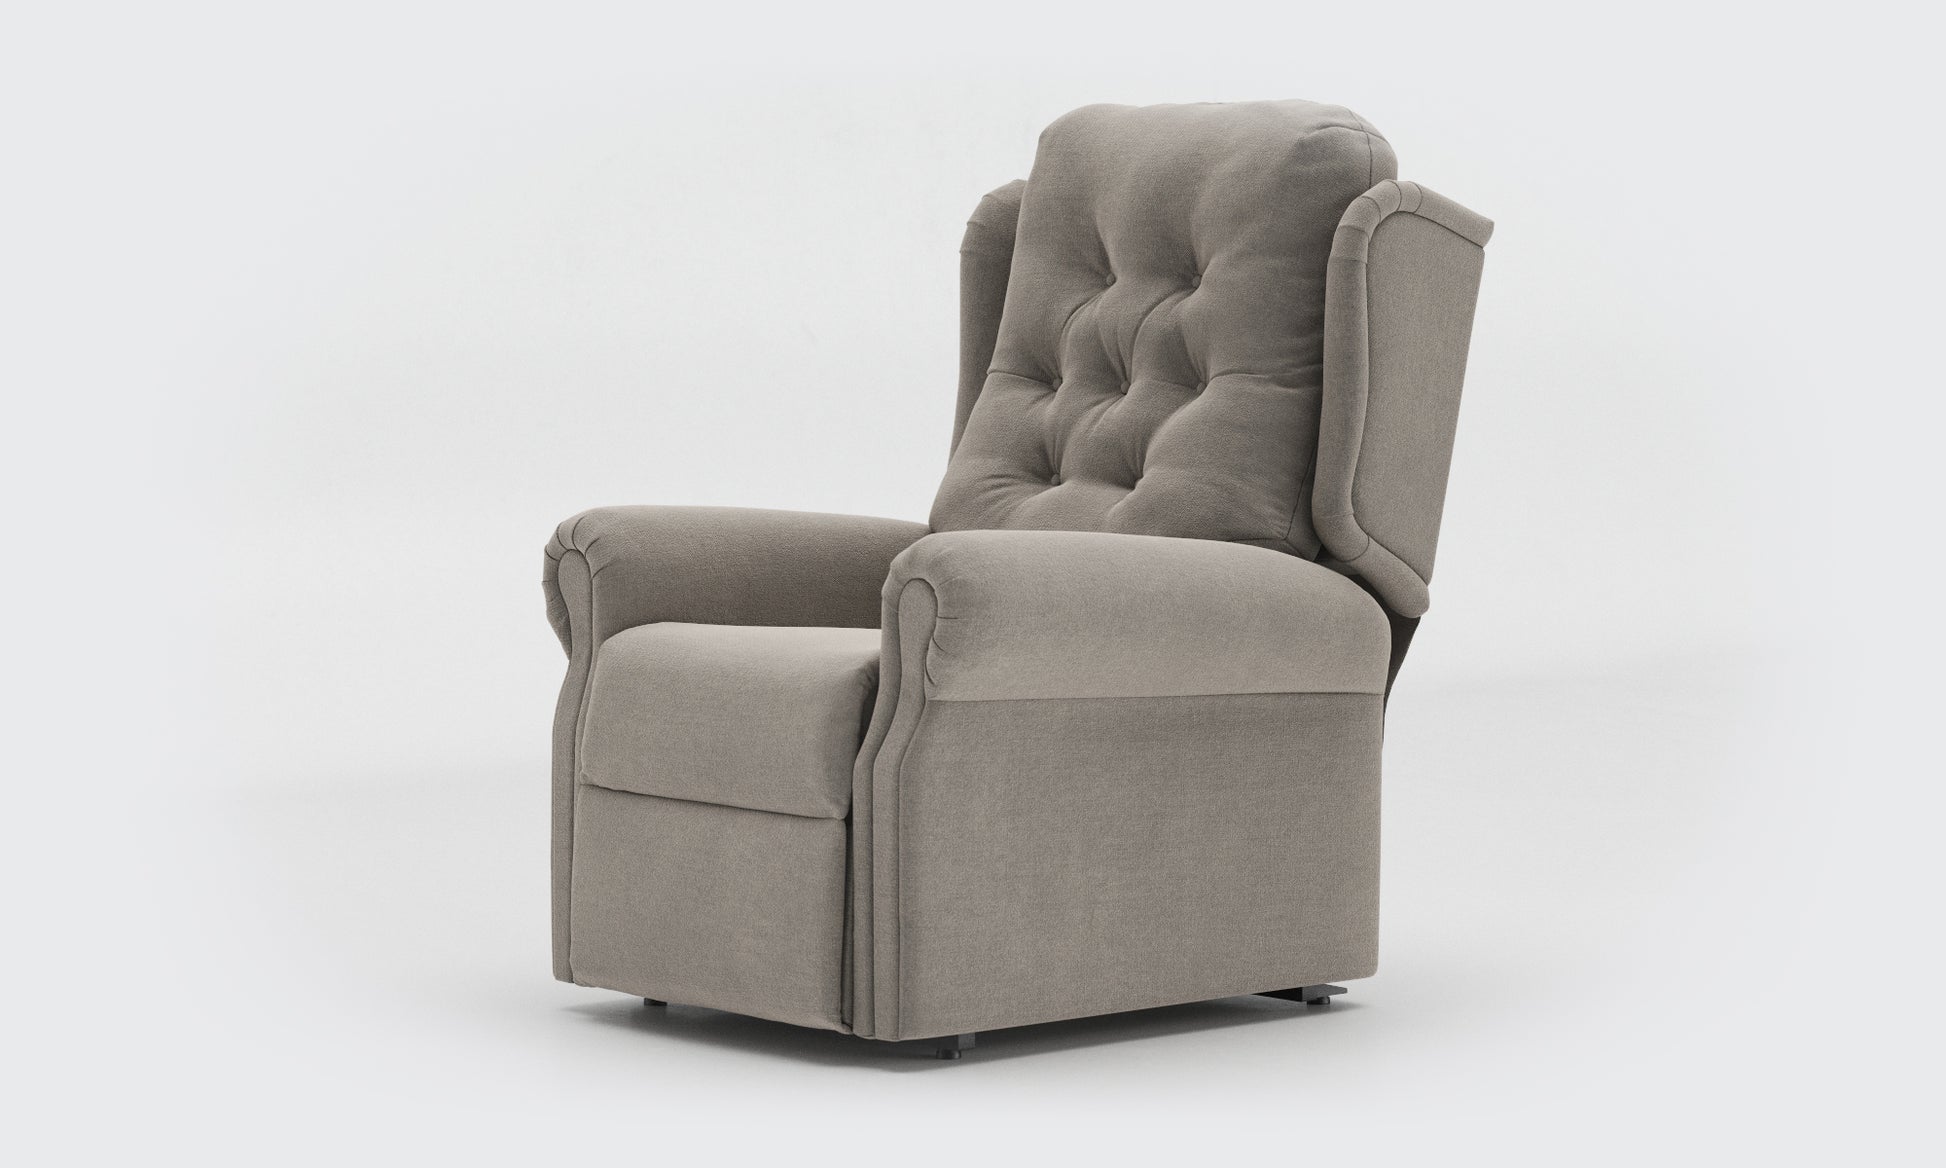 Adara Riser Recliner Chair standard buttons fabric Zinc